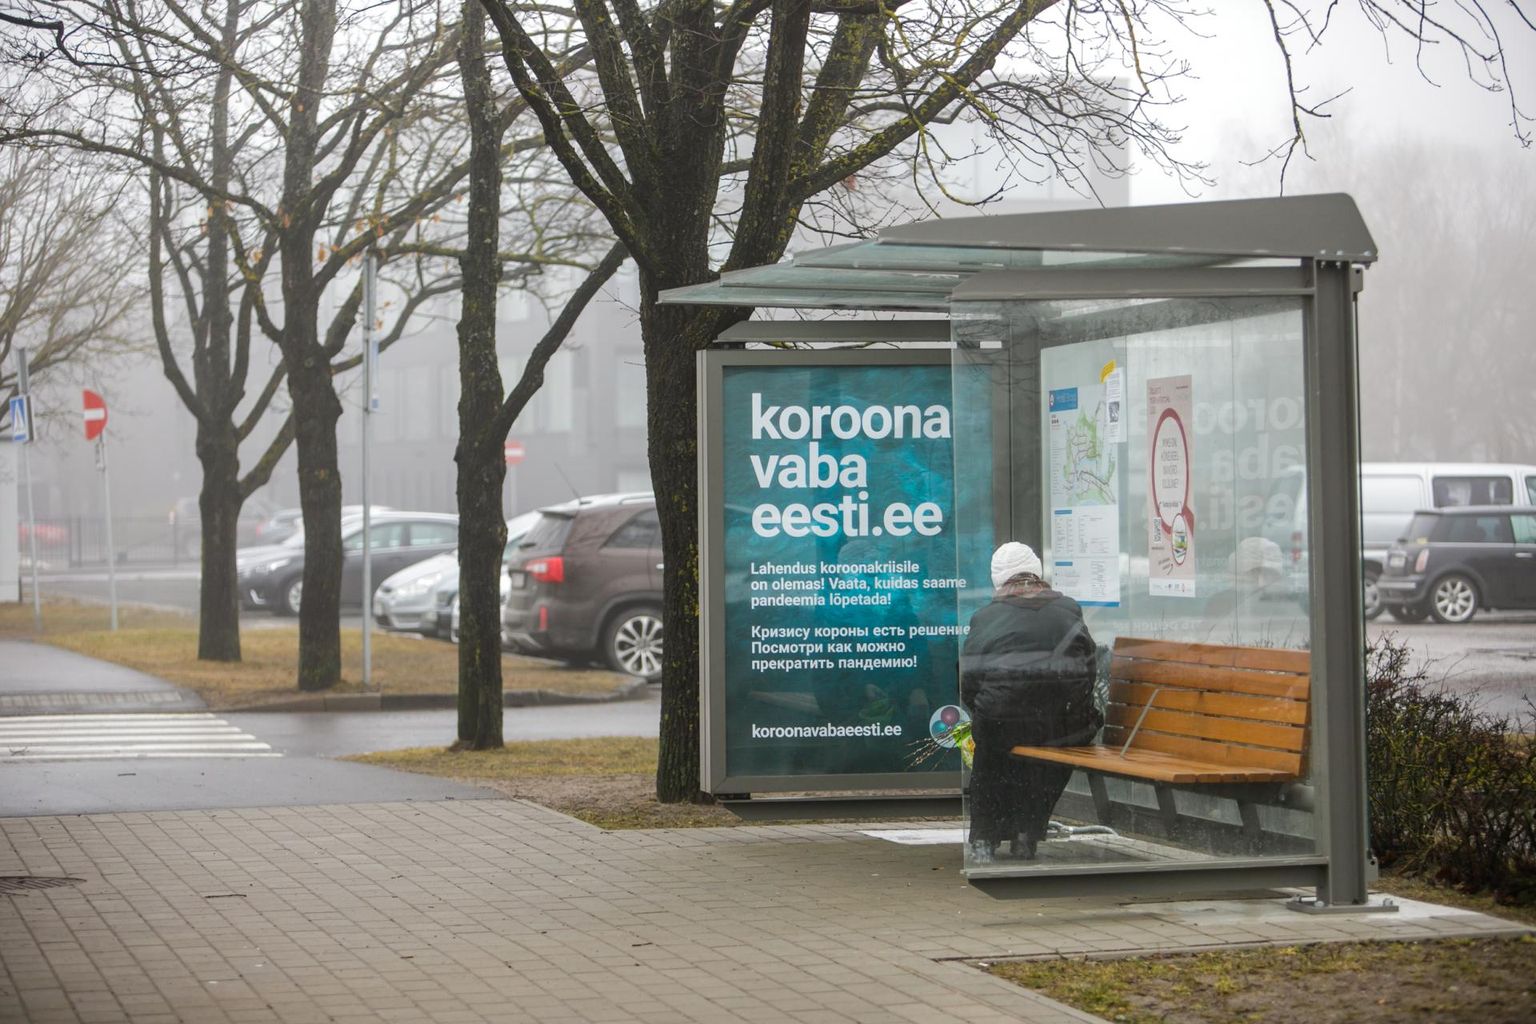 Reklaam aine kohta, mida terviseamet taunib, on üleval Pärnus Strandi bussipeatuses.